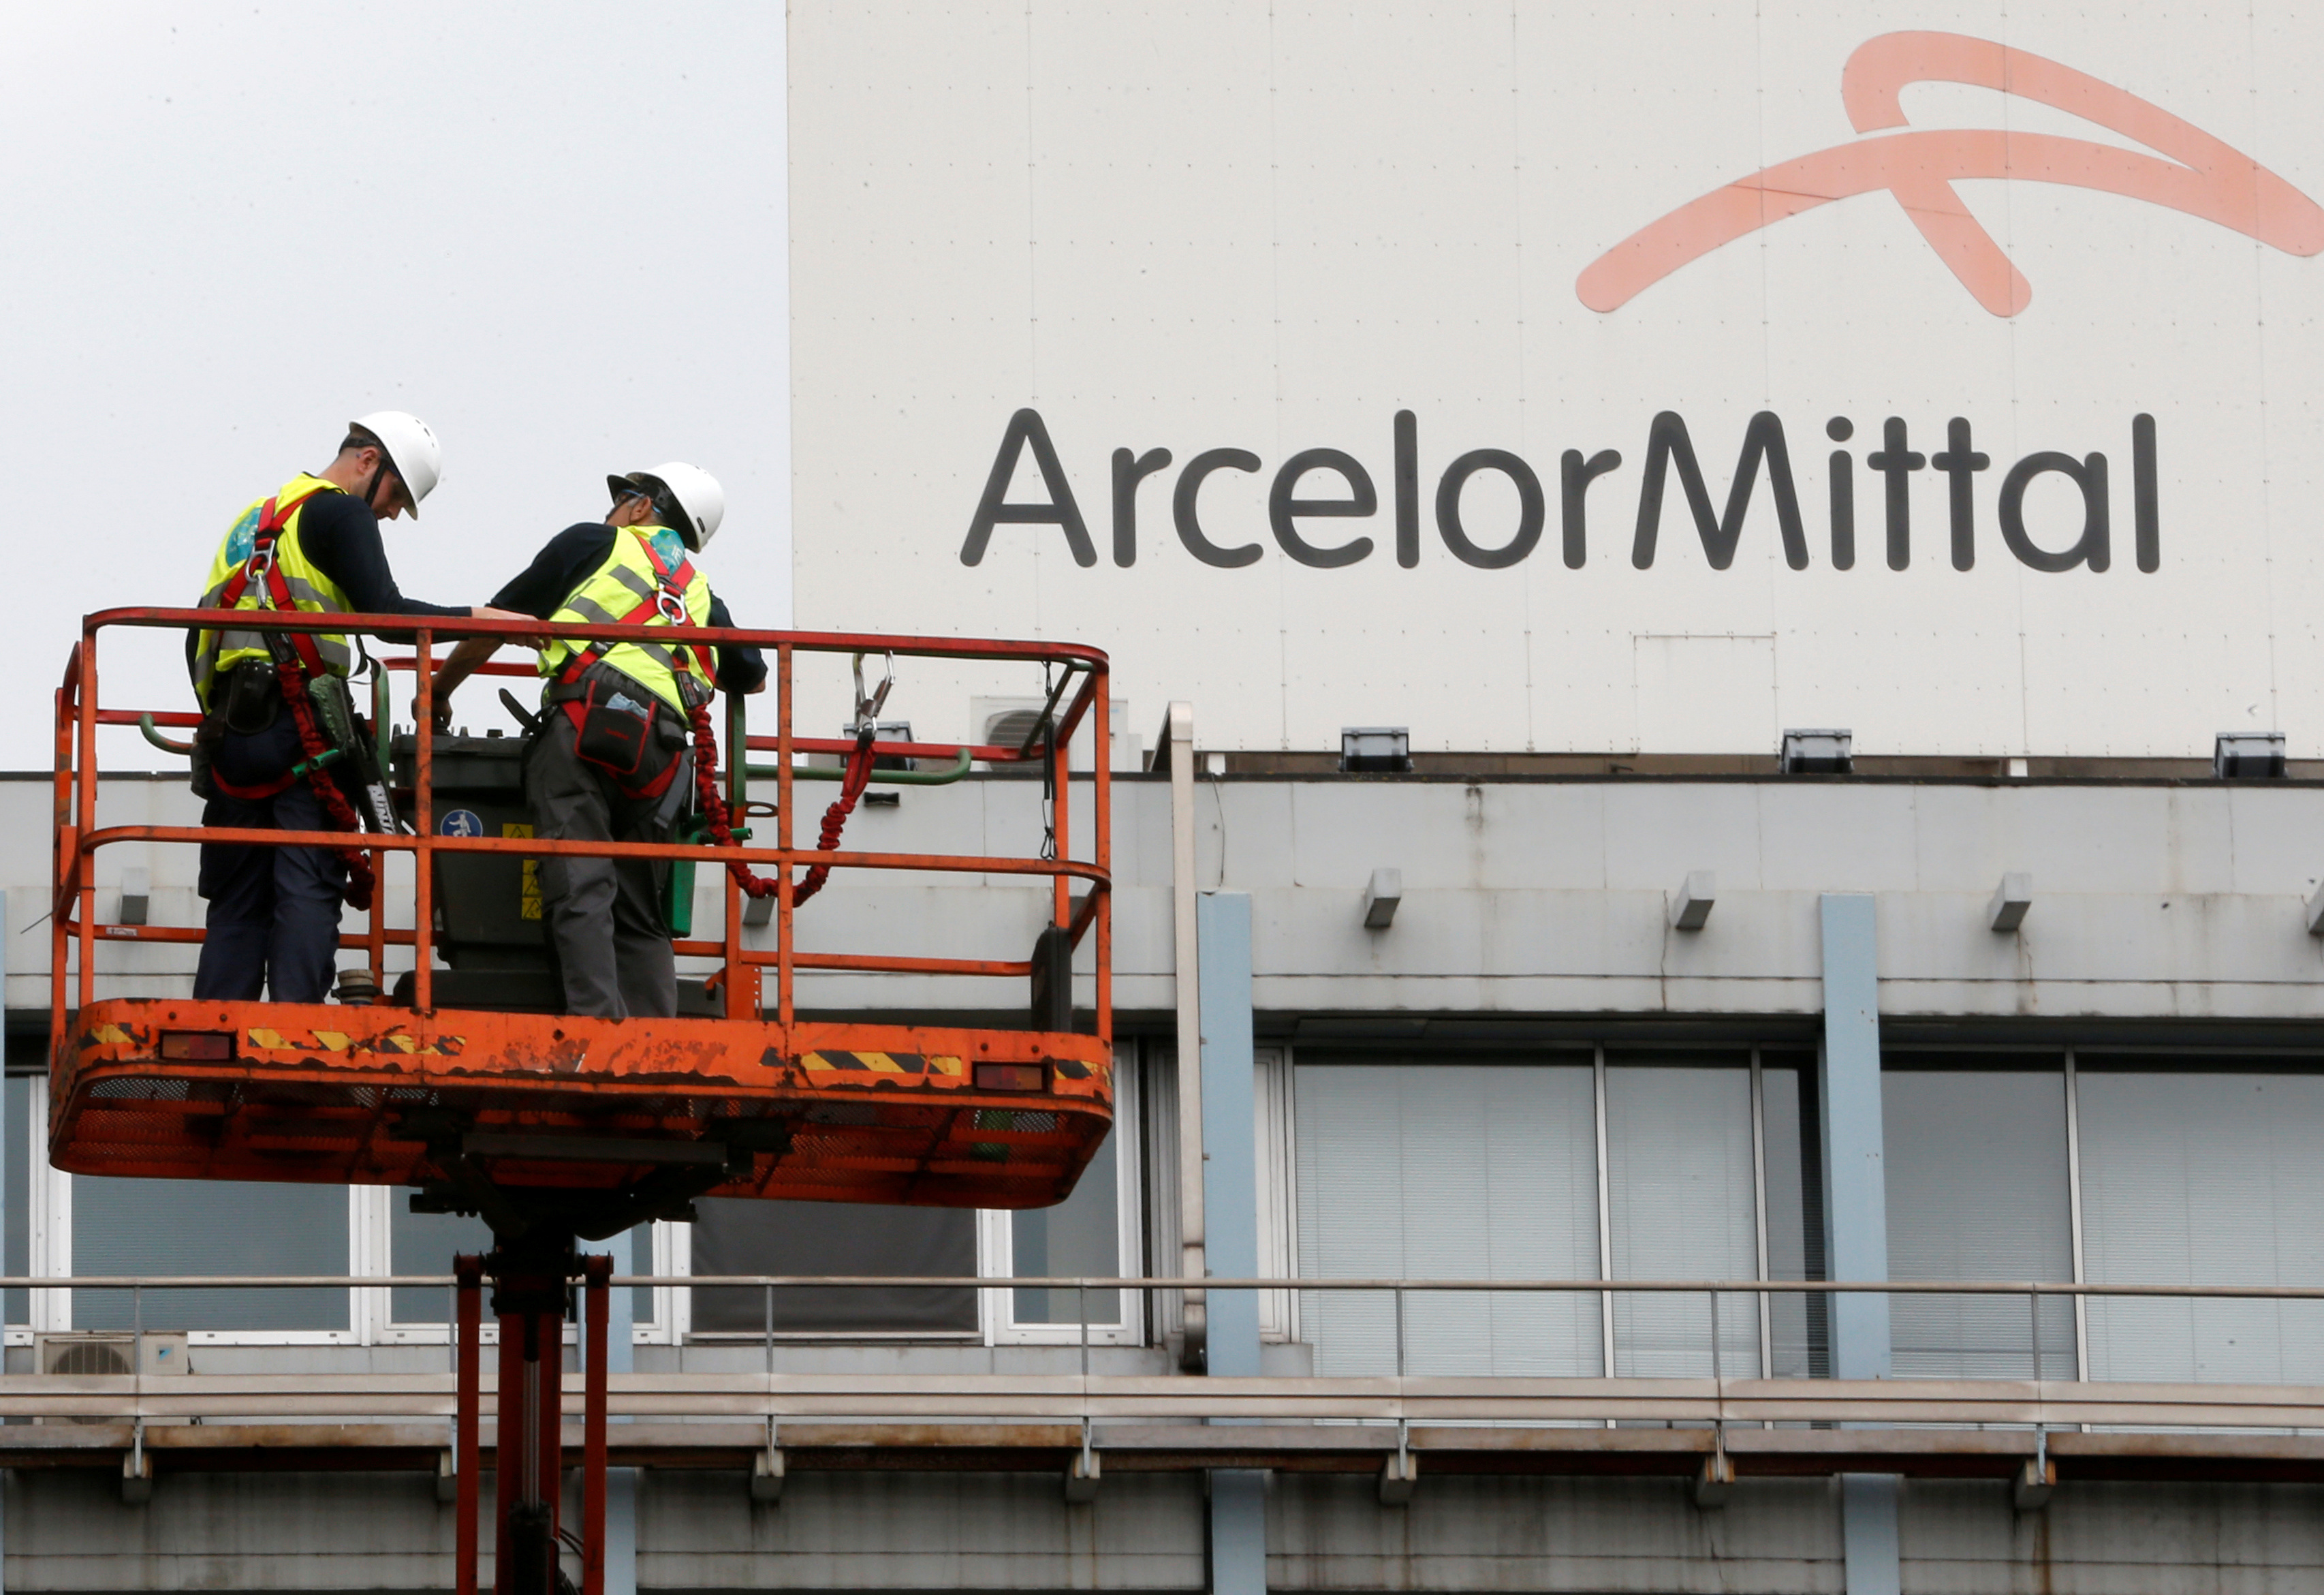 阿塞洛米塔尔钢铁（ArcelorMittal）乐观看待中长期钢市展望。  路透